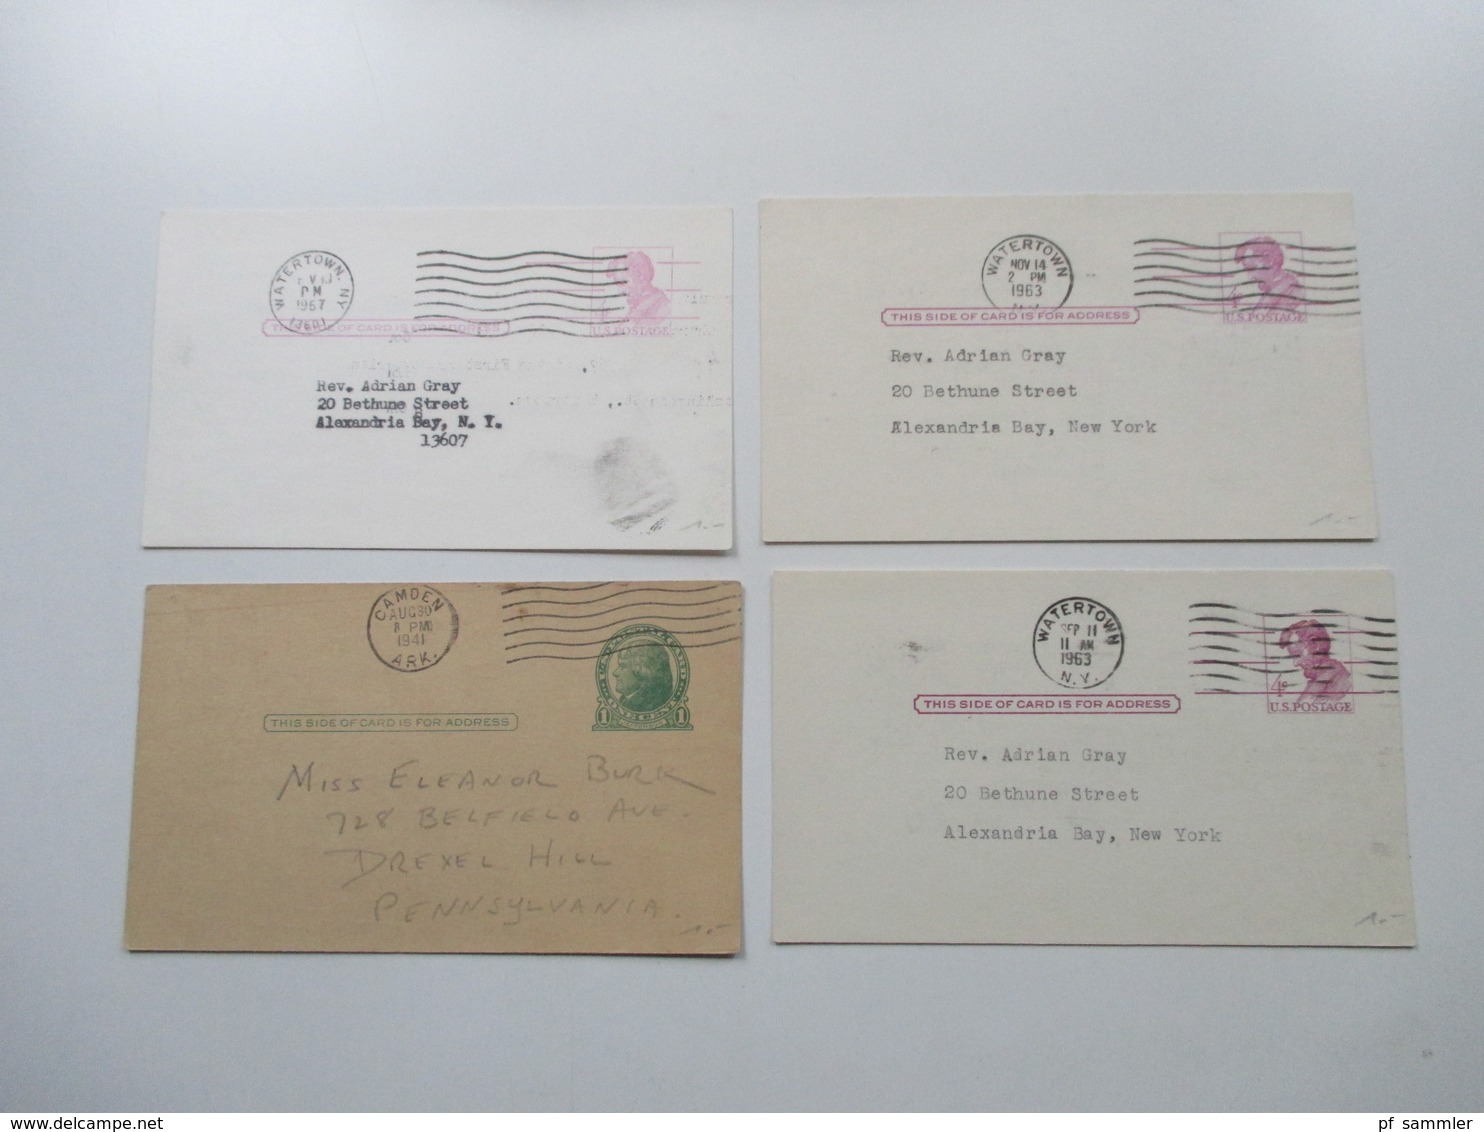 USA Posten GA Karten / Umschläge ca. 1980 / 90er Jahre 350 Stück ungebraucht / Nominale?? Lagerposten